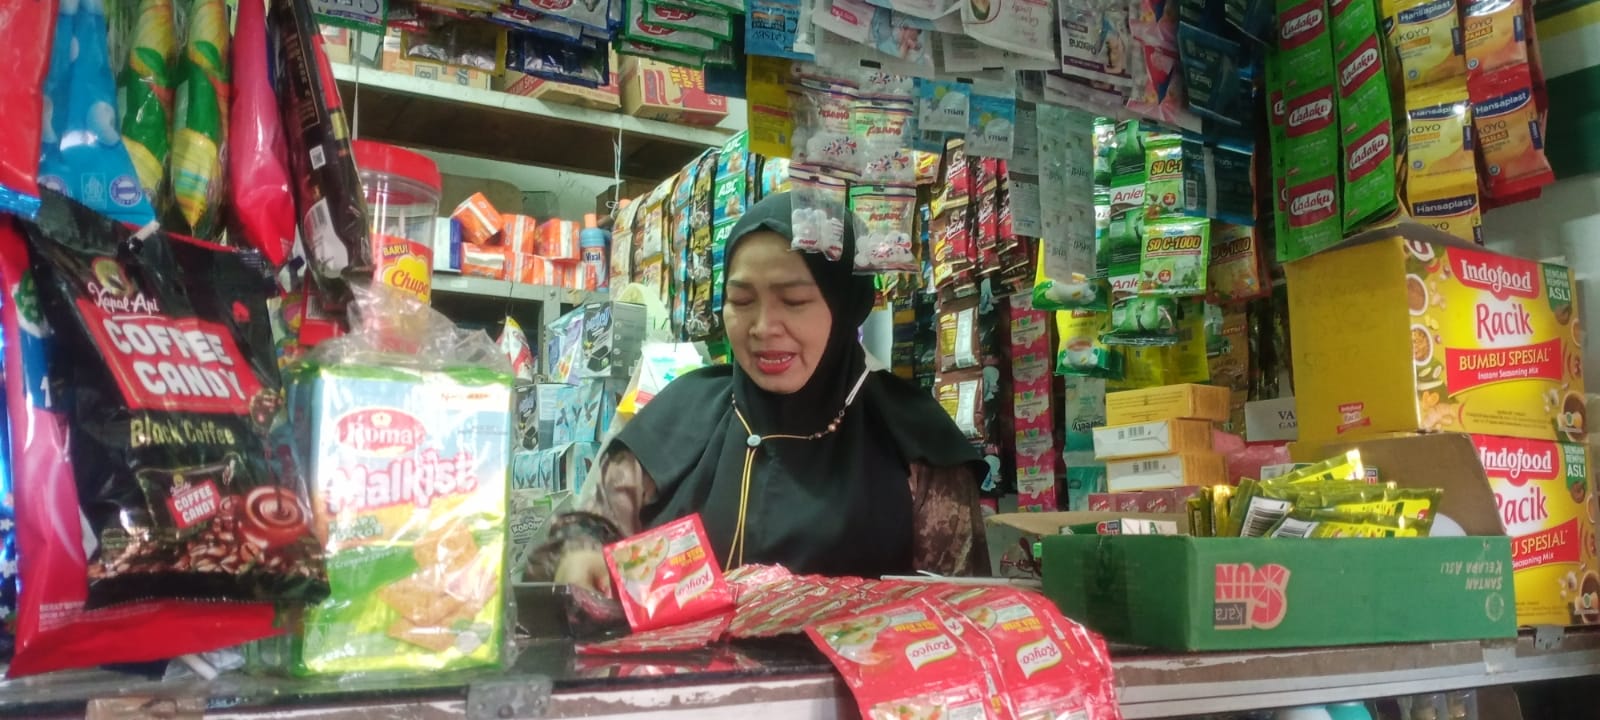 Setelah Beras, Giliran Harga Gula Pasir Naik, Pedagang di Pasar Tradisional Tegal Kebingungan